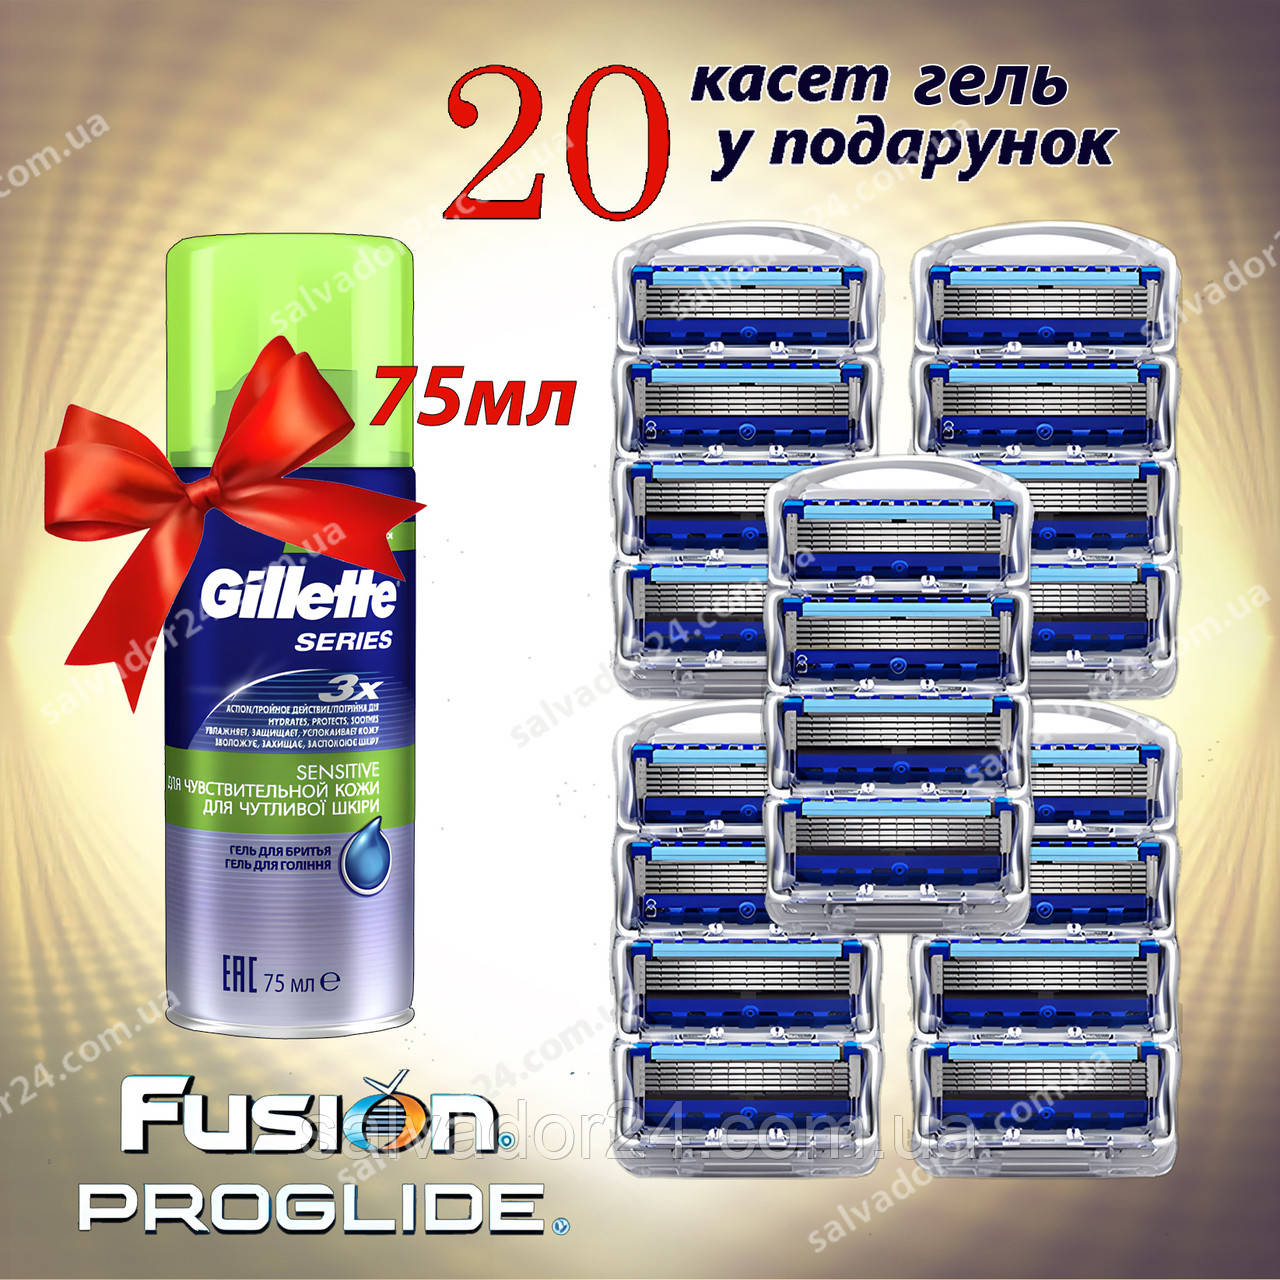 Fusion ProGlide 20 змінних касет - Гель для гоління у Подарунок!